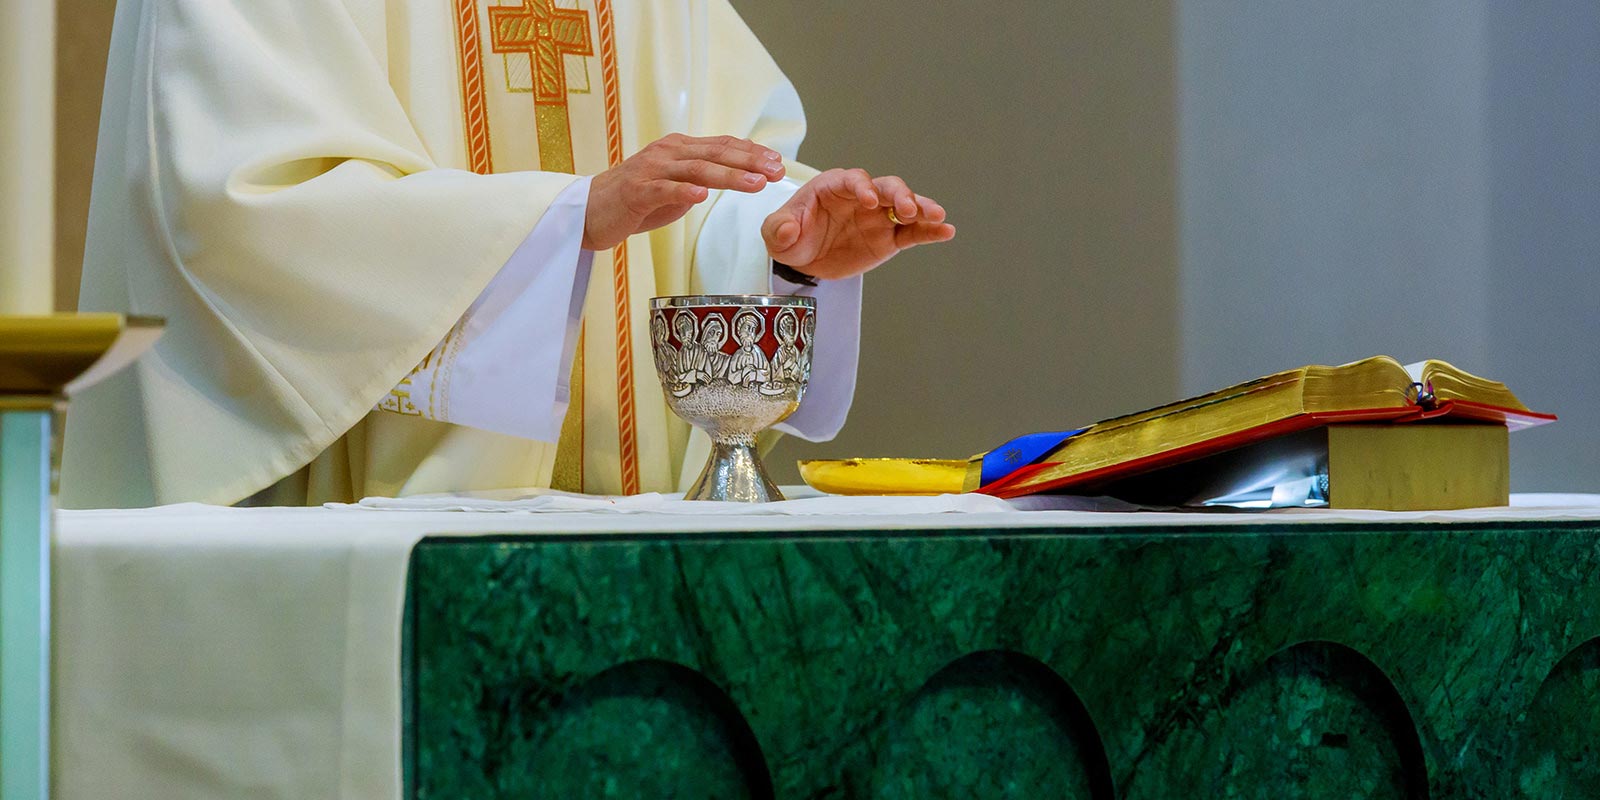 Eucaristía, el sacerdote bendice el pan y el vino en el altar.